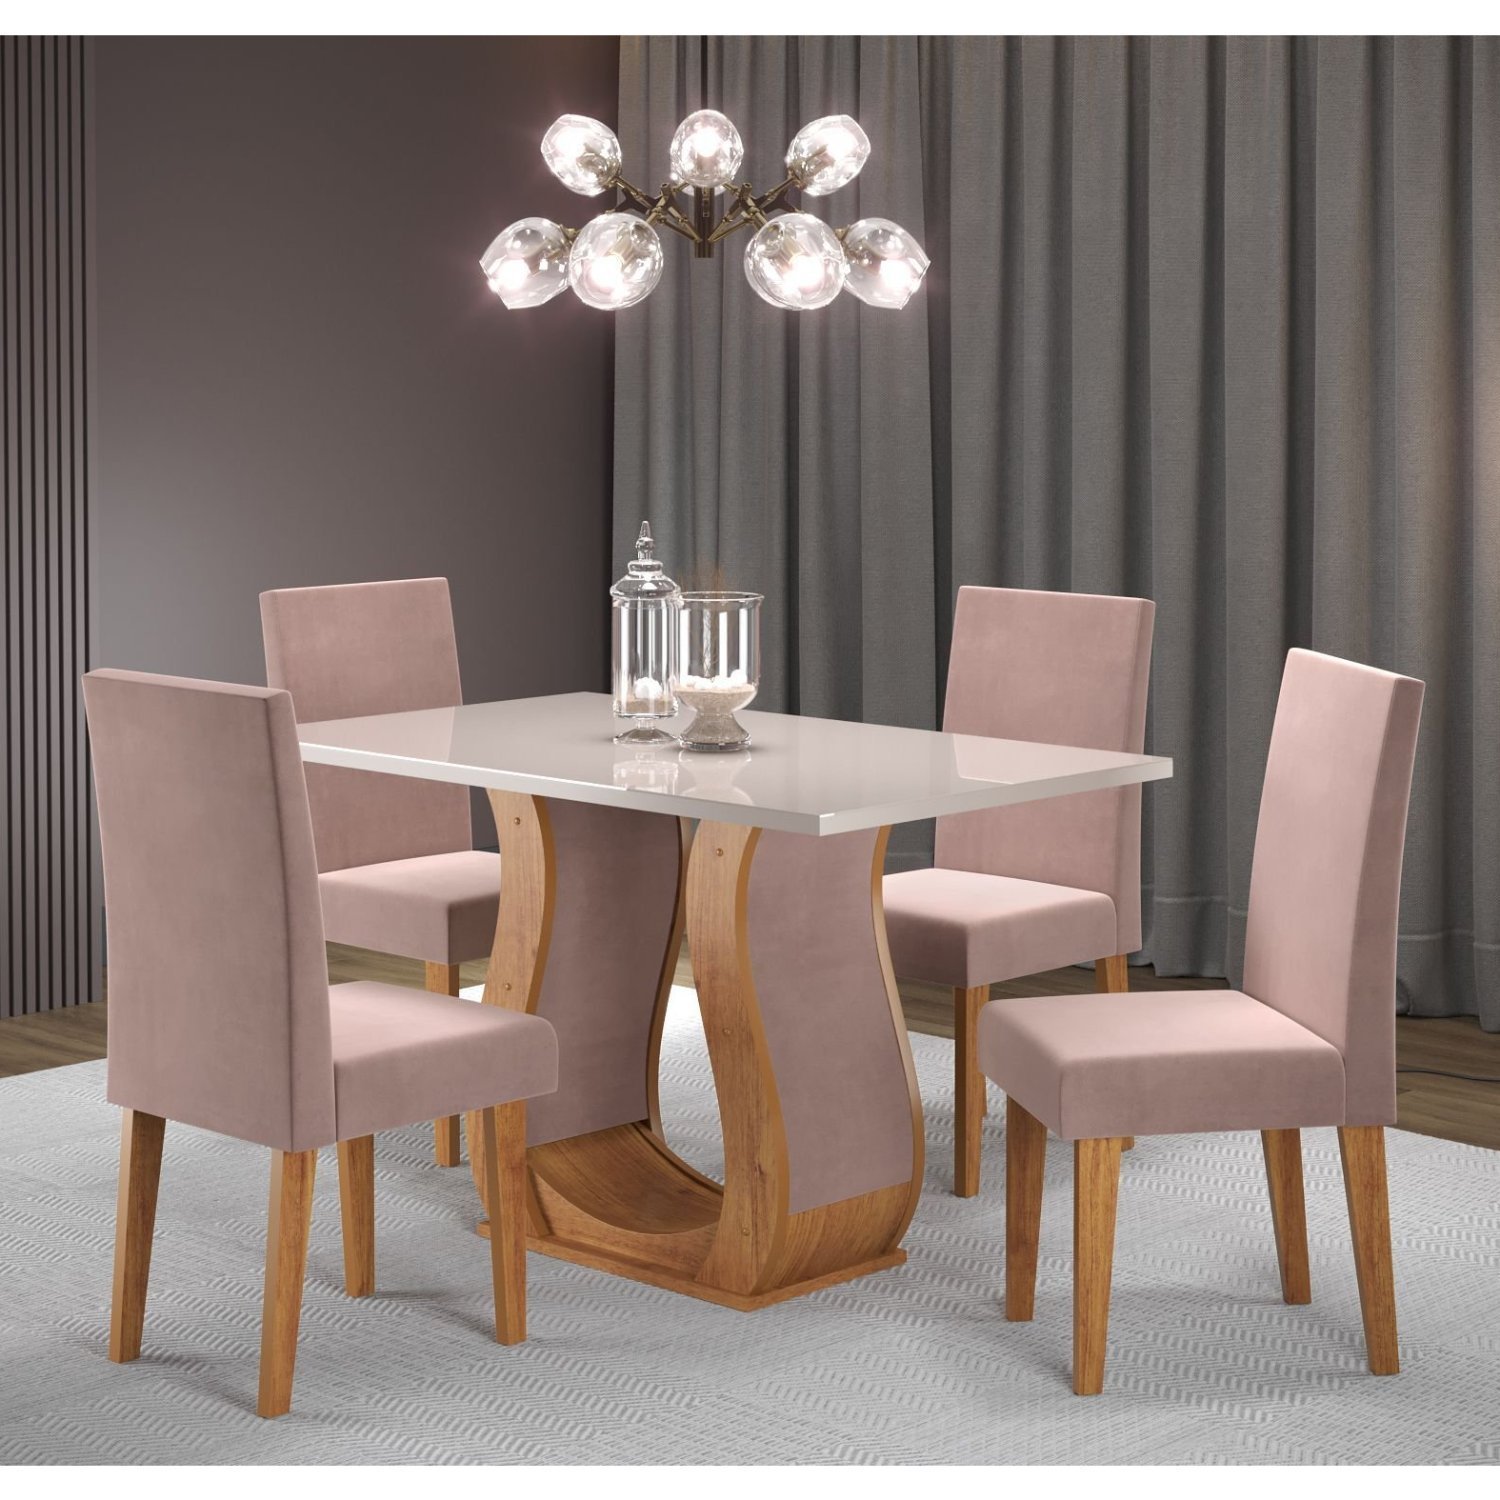 Conjunto Sala de Jantar Mesa Inovare 120x80cm Tampo Vidro/mdp com 4 Cadeiras Venus